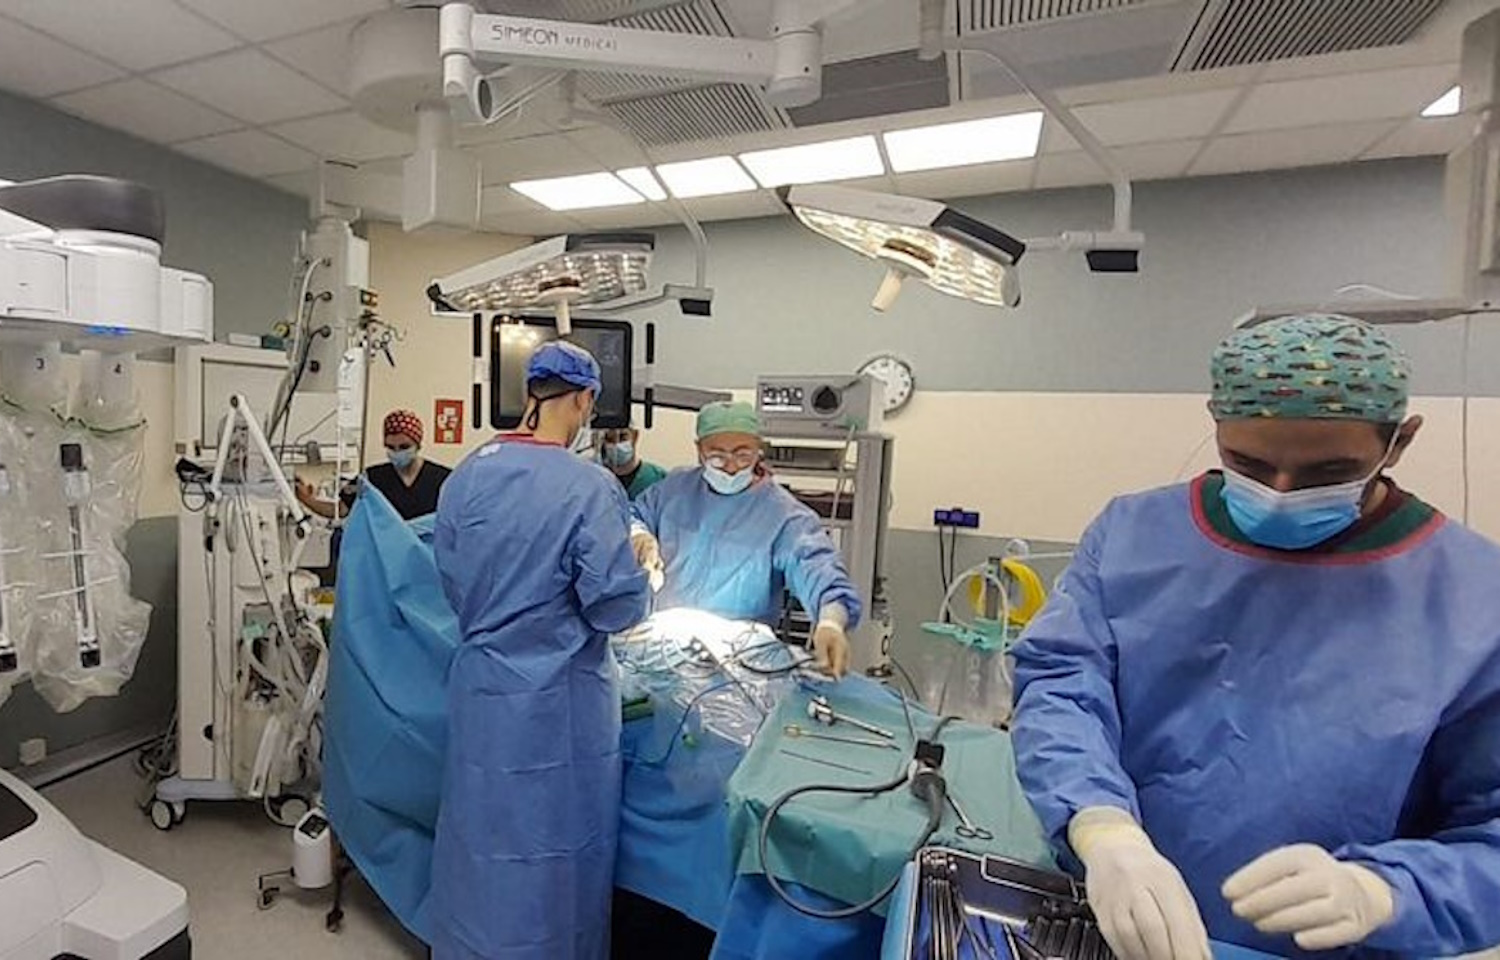 251 ΓΝΑ: Το Da Vinci Xi εγκαταστάθηκε και πραγματοποίησε την πρώτη του ρομποτική χειρουργική επέμβαση